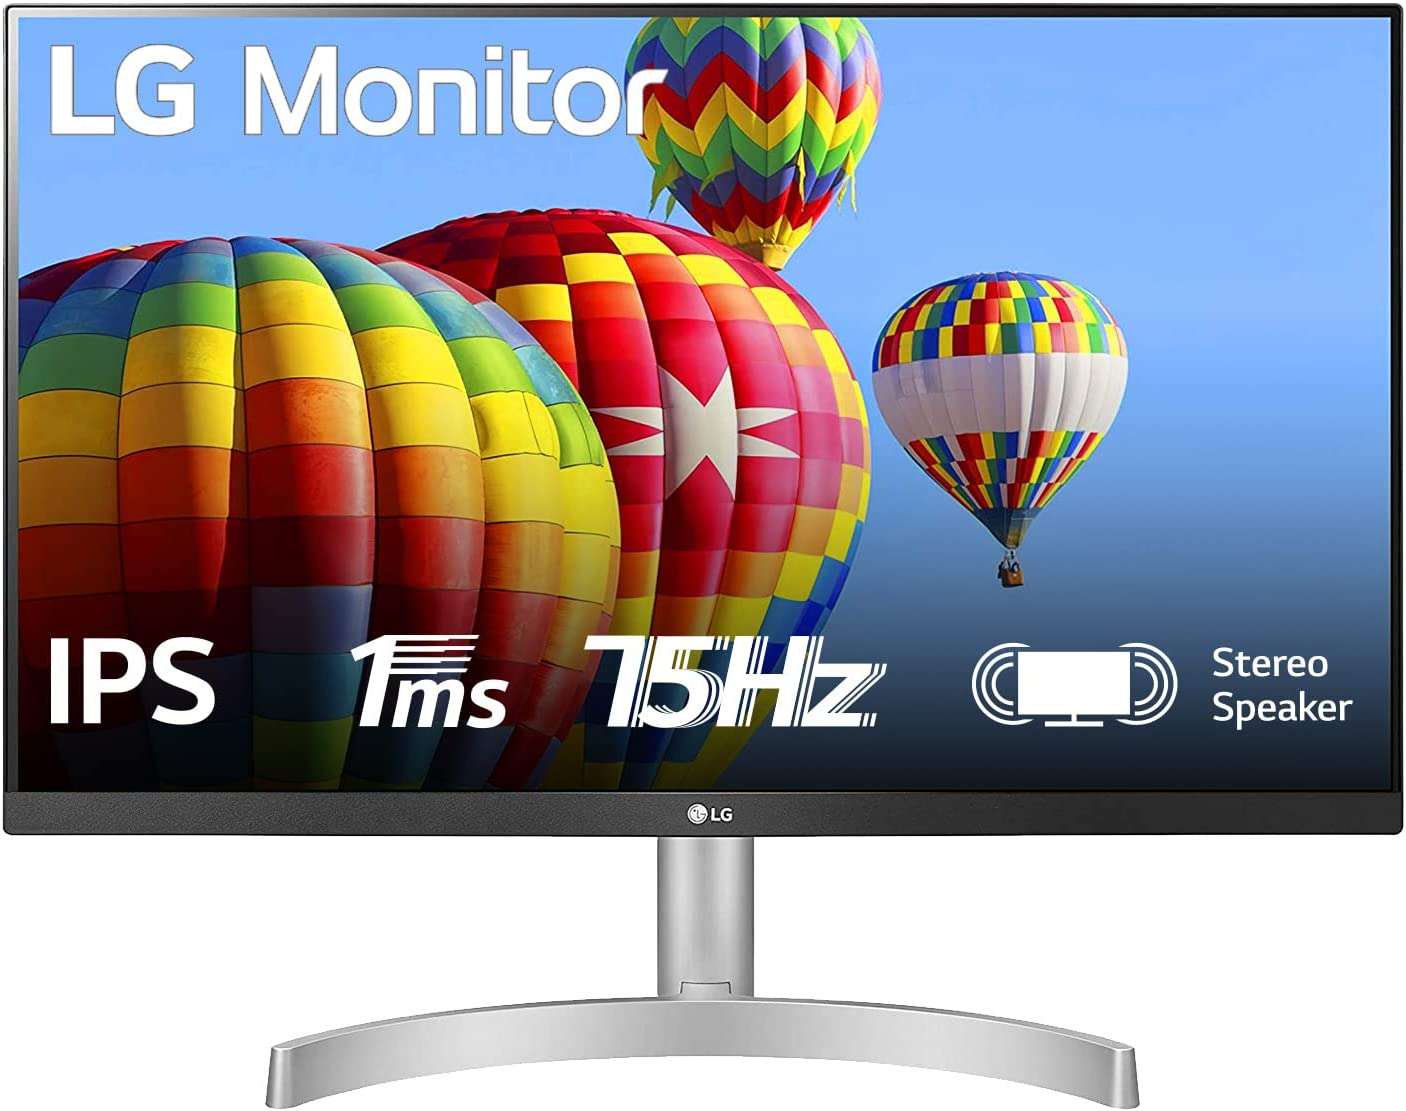 Un ottimo monitor LG da 24 pollici ad un super prezzo su